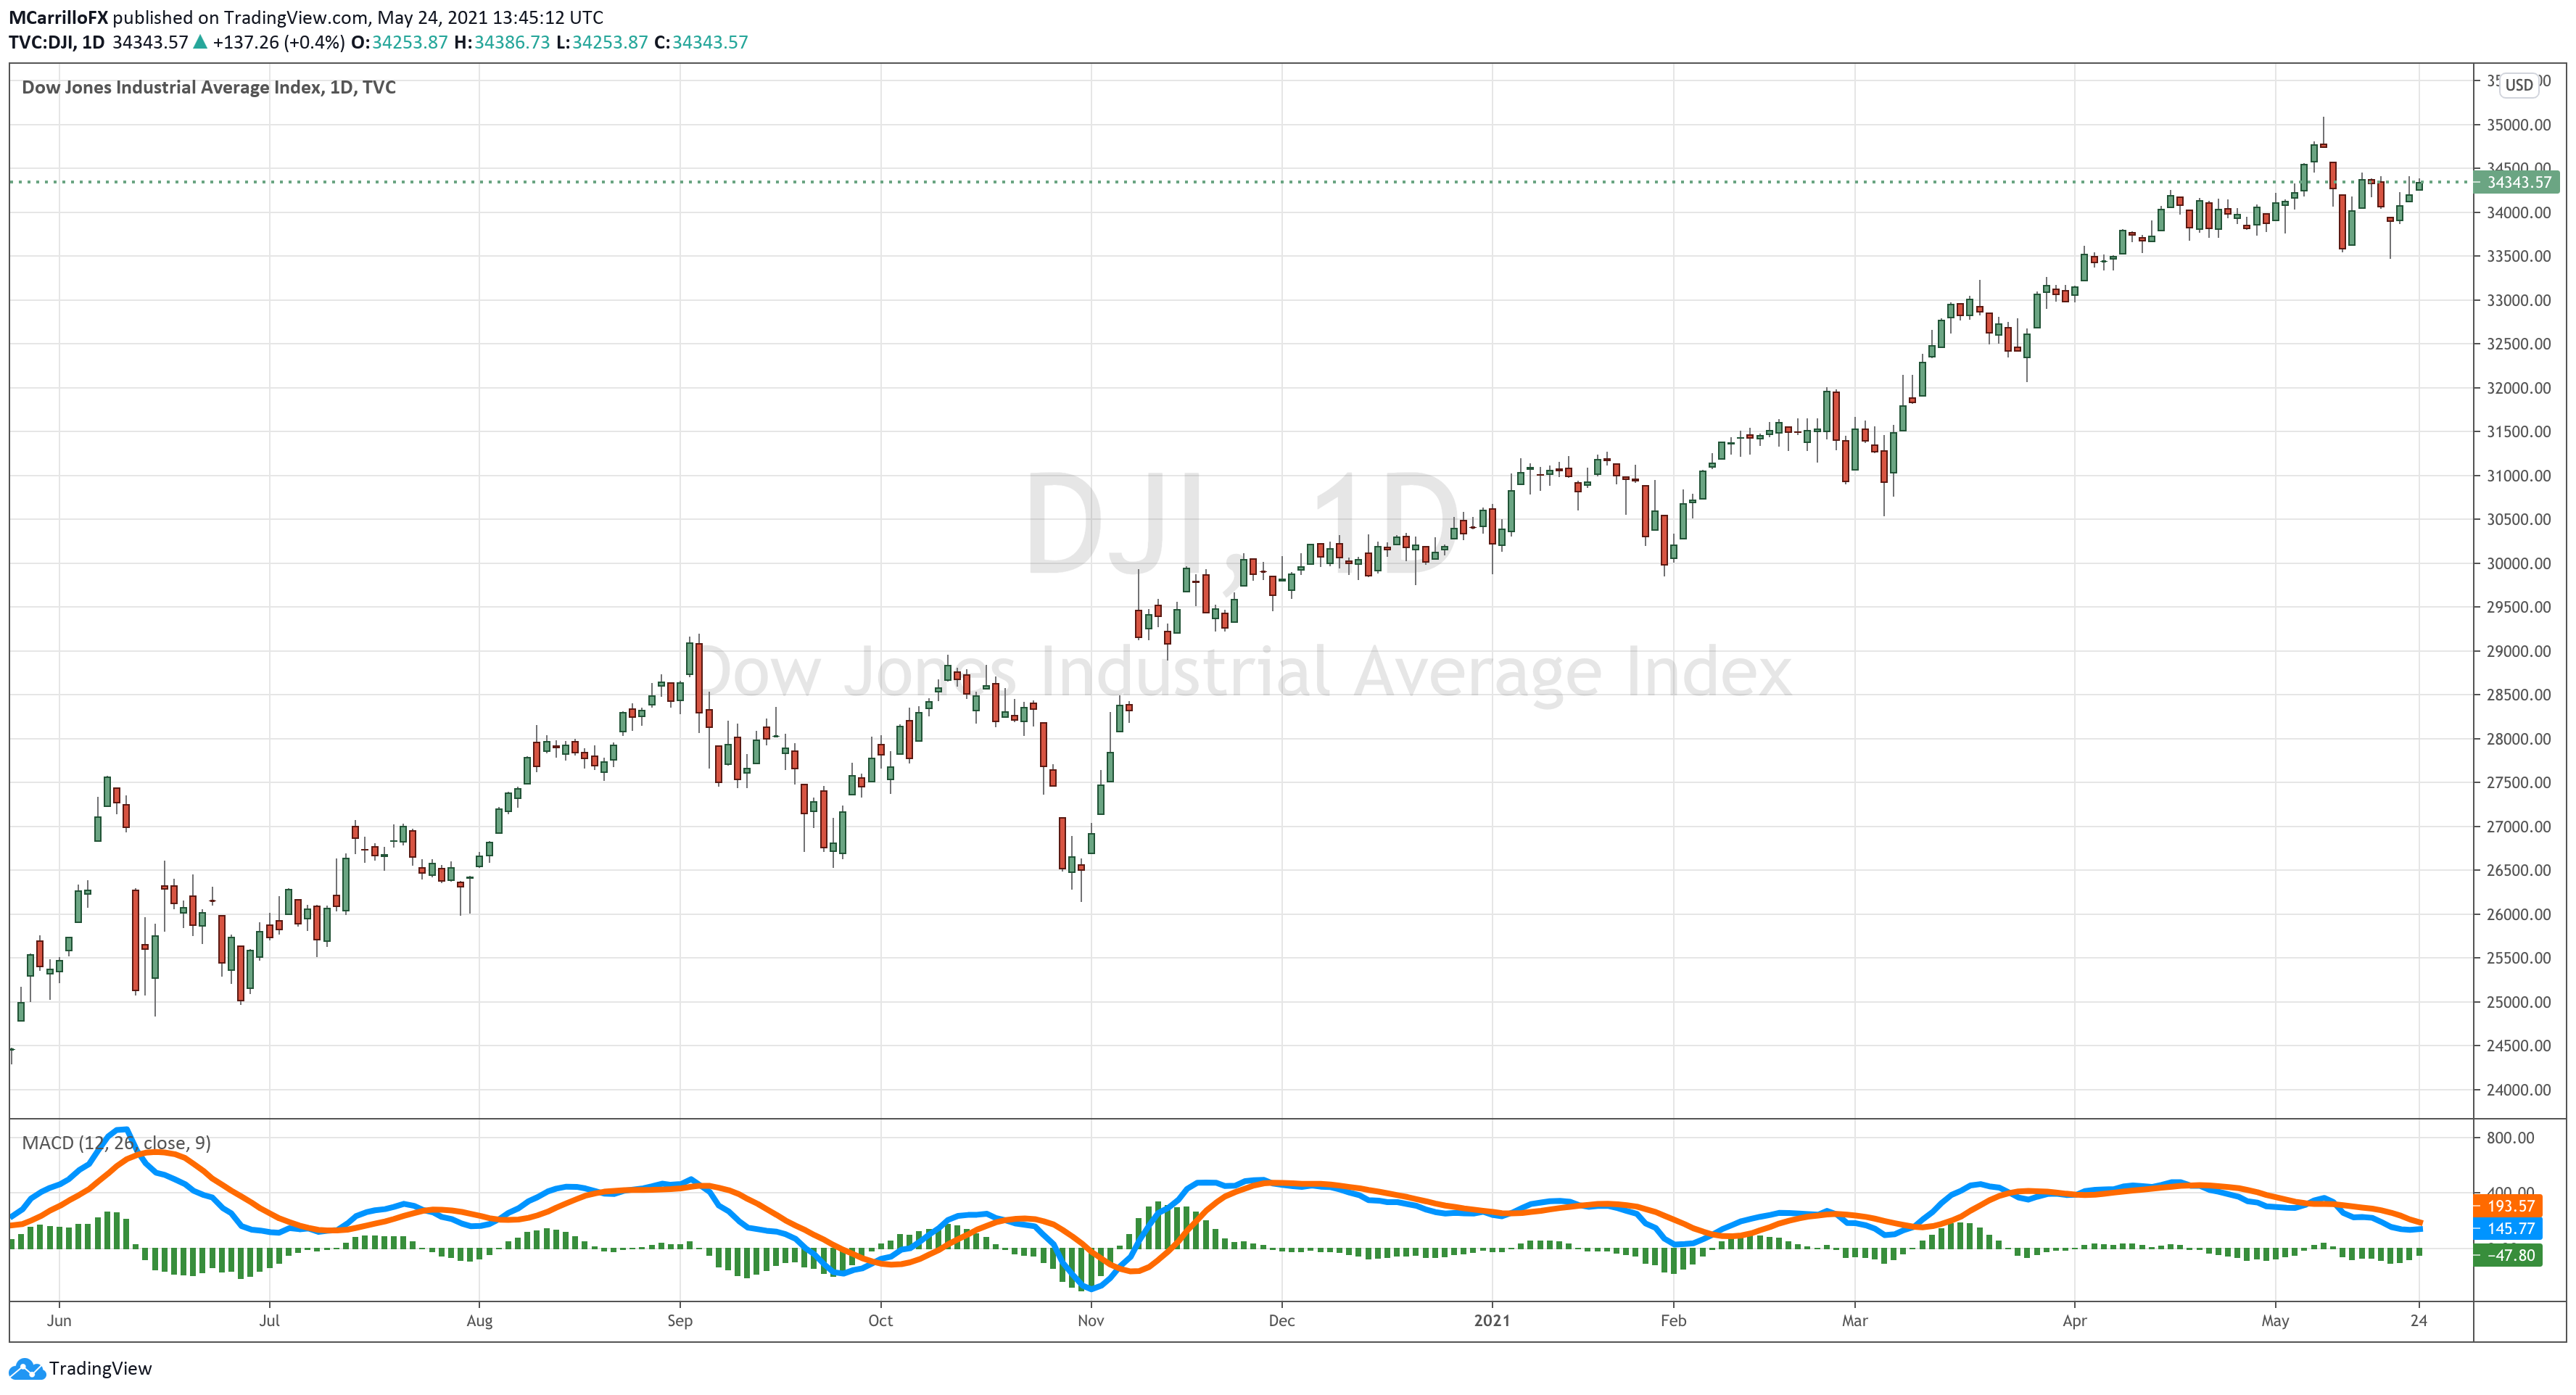 DJIA chart diario